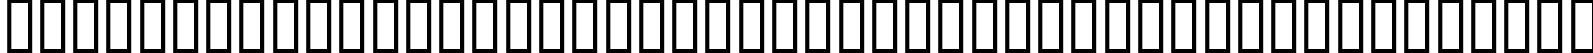 Пример написания шрифтом EuroRoman Oblique текста на белорусском